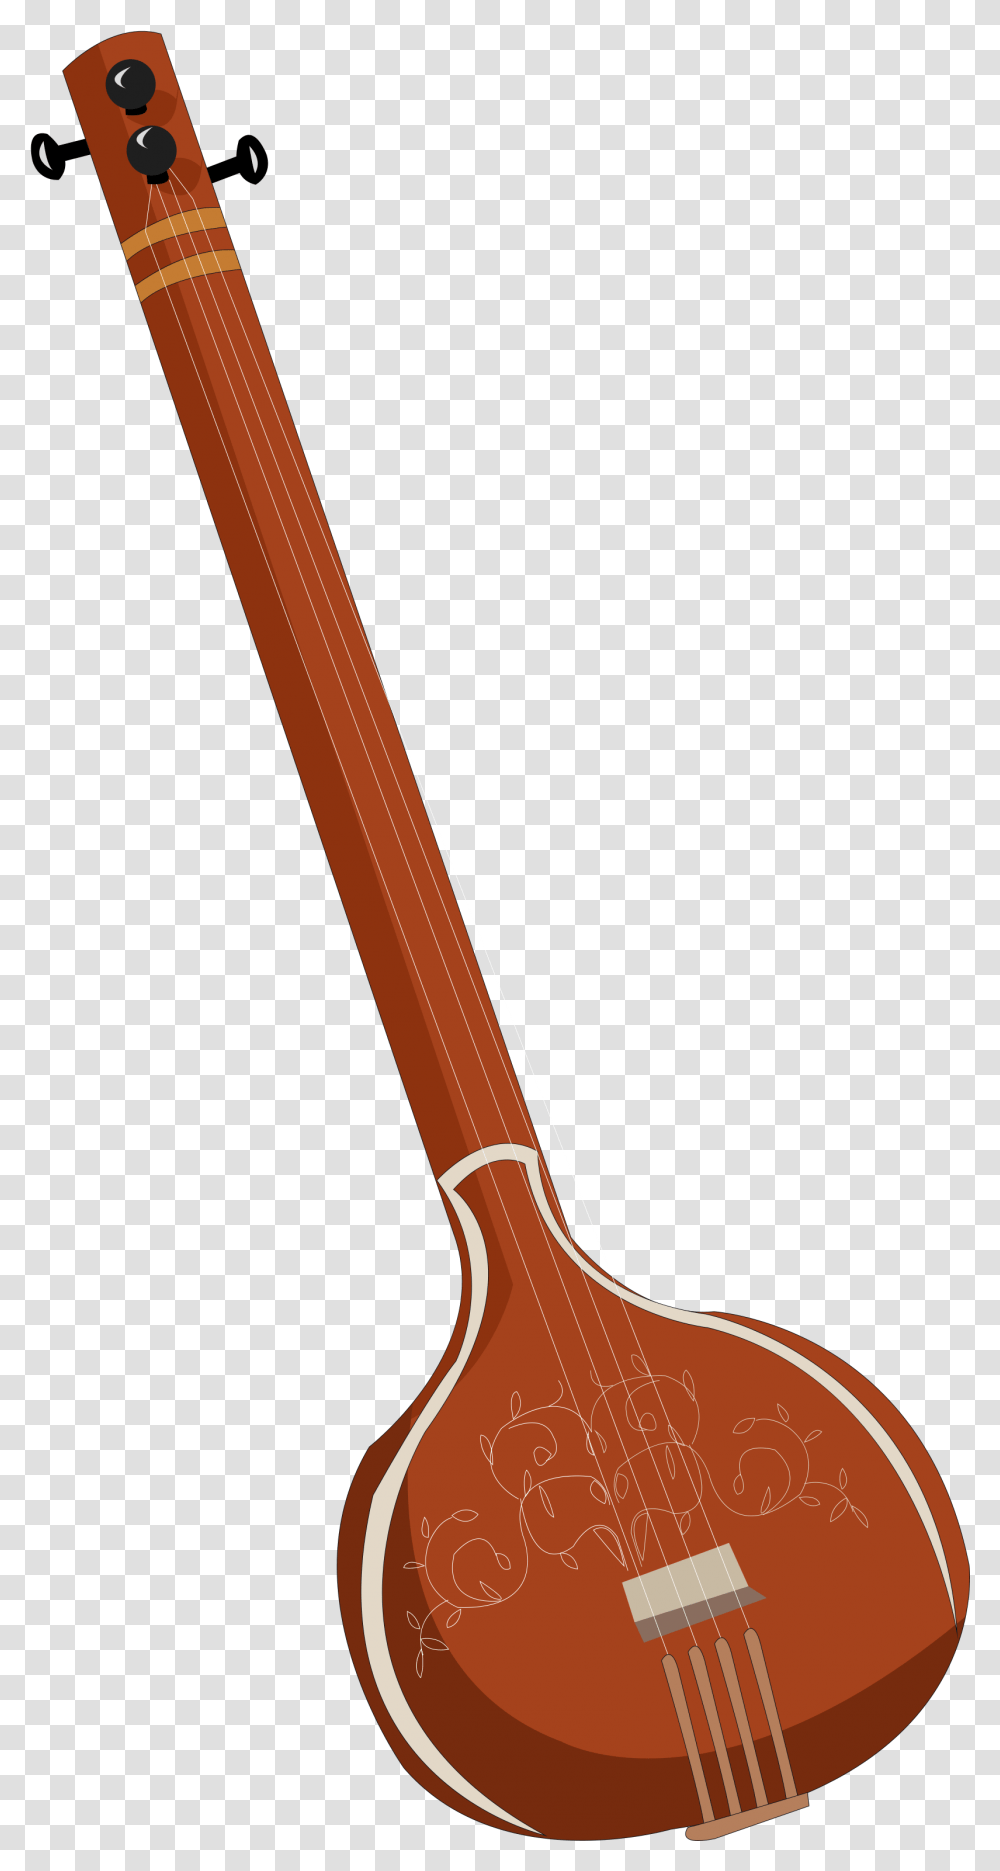 Indian Musical Instruments, Lute, Mandolin, Broom, Shovel Transparent Png